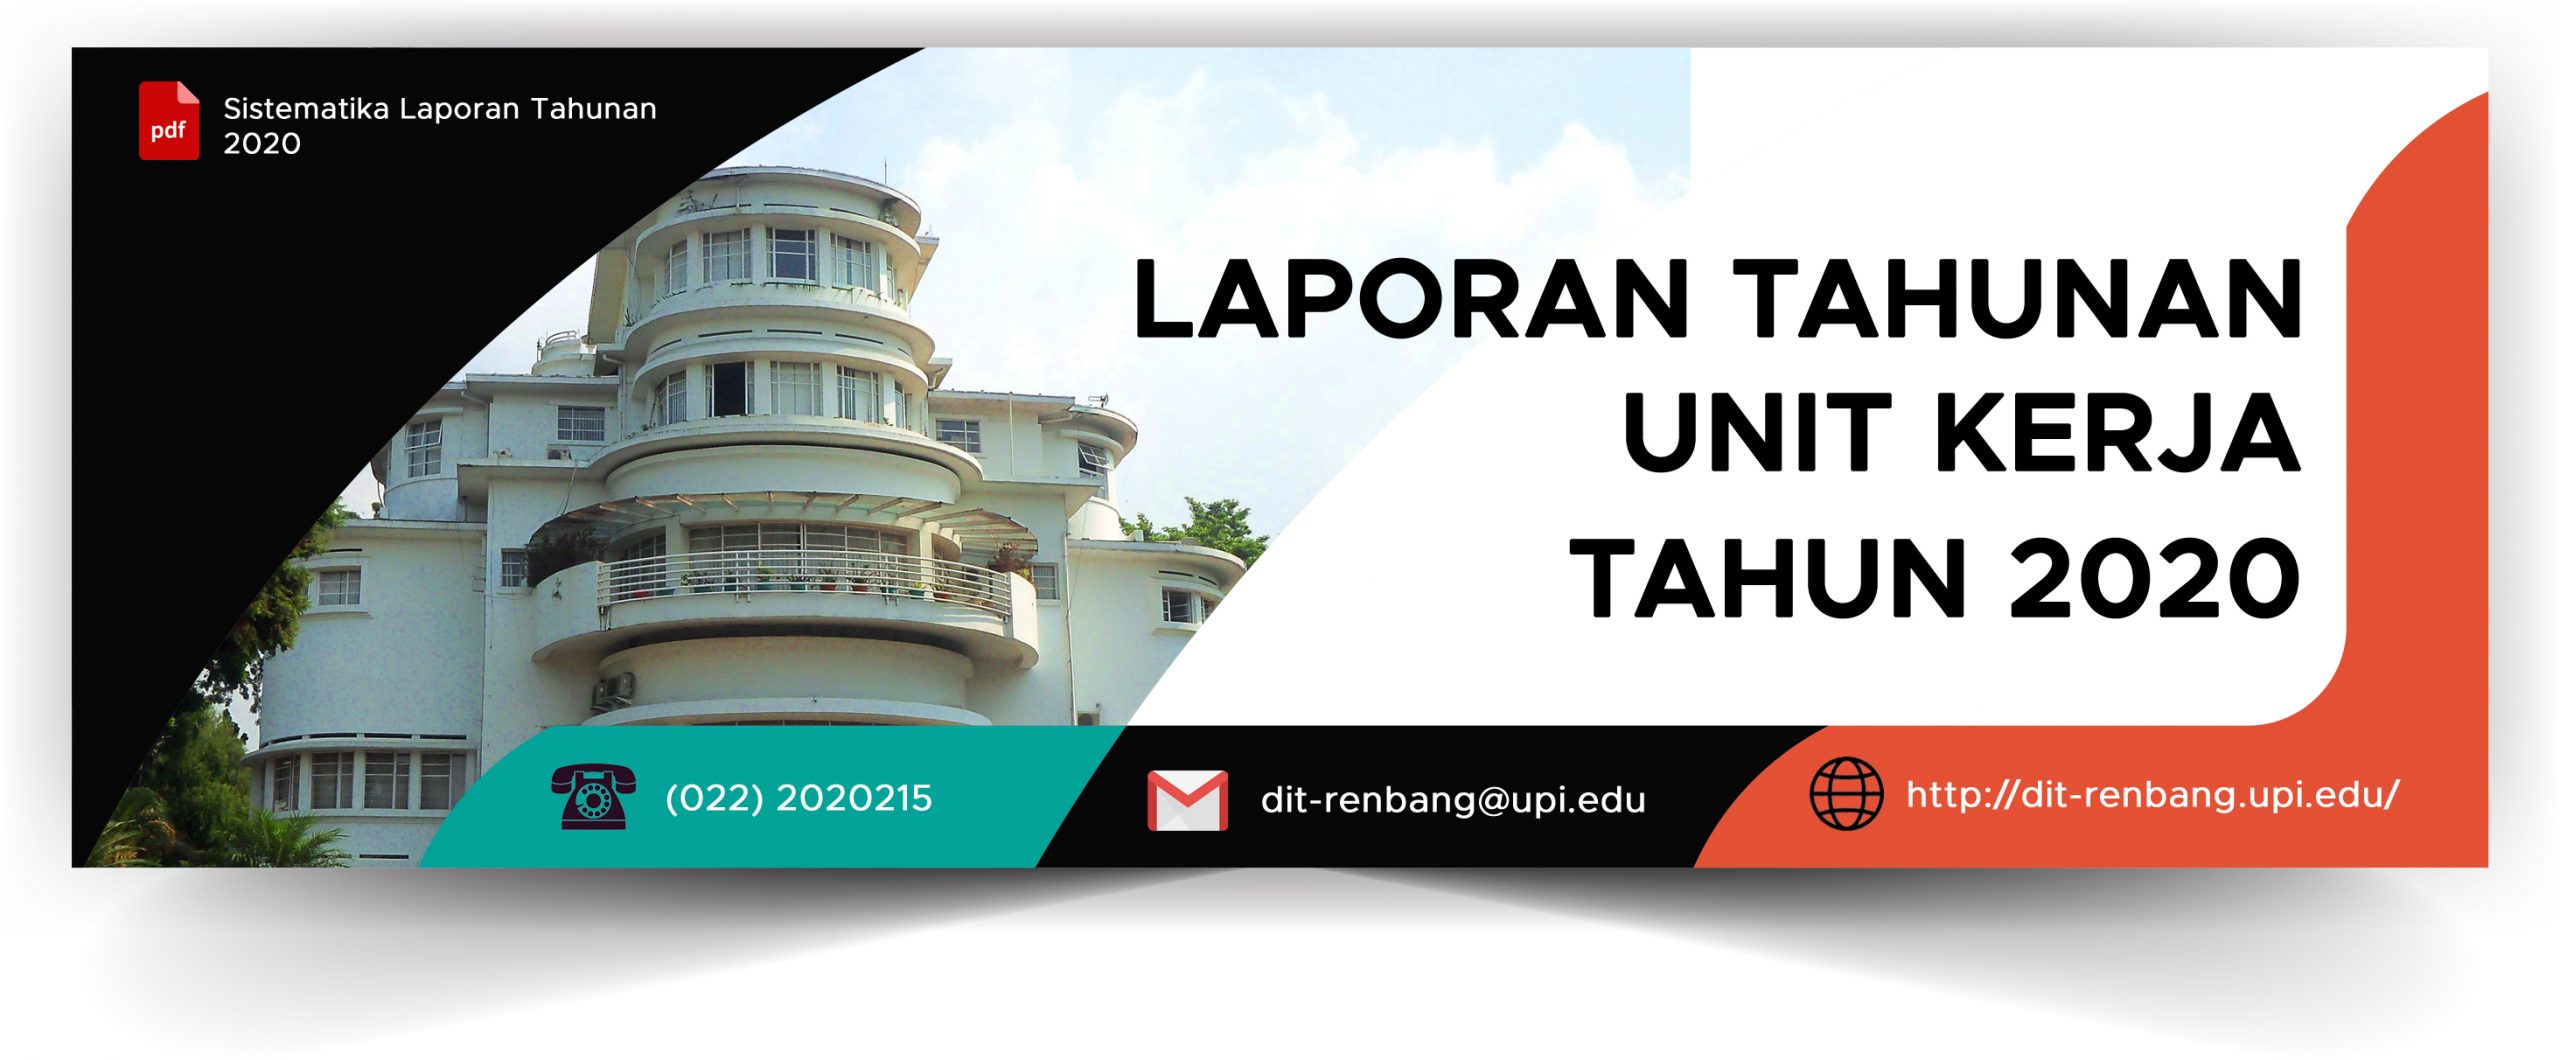 You are currently viewing Laporan Tahunan Unit Kerja Tahun 2020